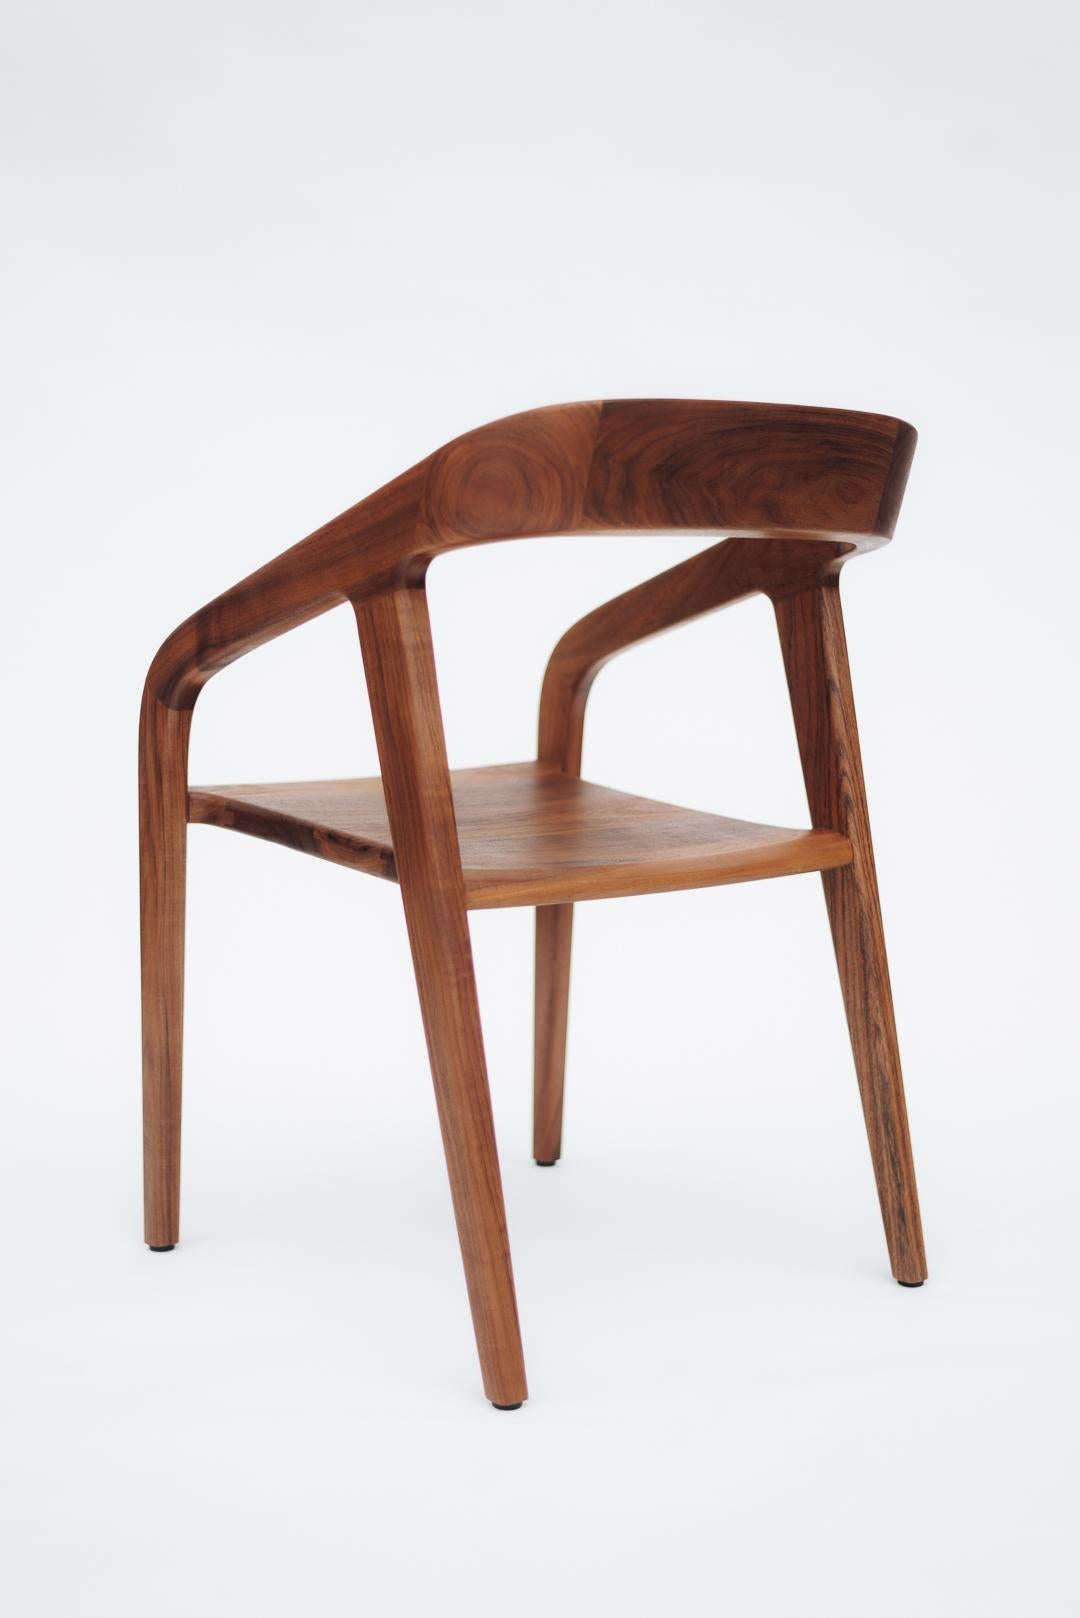 La chaise Tamay allie personnalité et subtilité, grâce à des lignes simples et des proportions harmonieuses, qui soulignent la beauté naturelle du bois tropical massif, originaire du sud-est du Mexique. Produit en mettant l'accent sur les